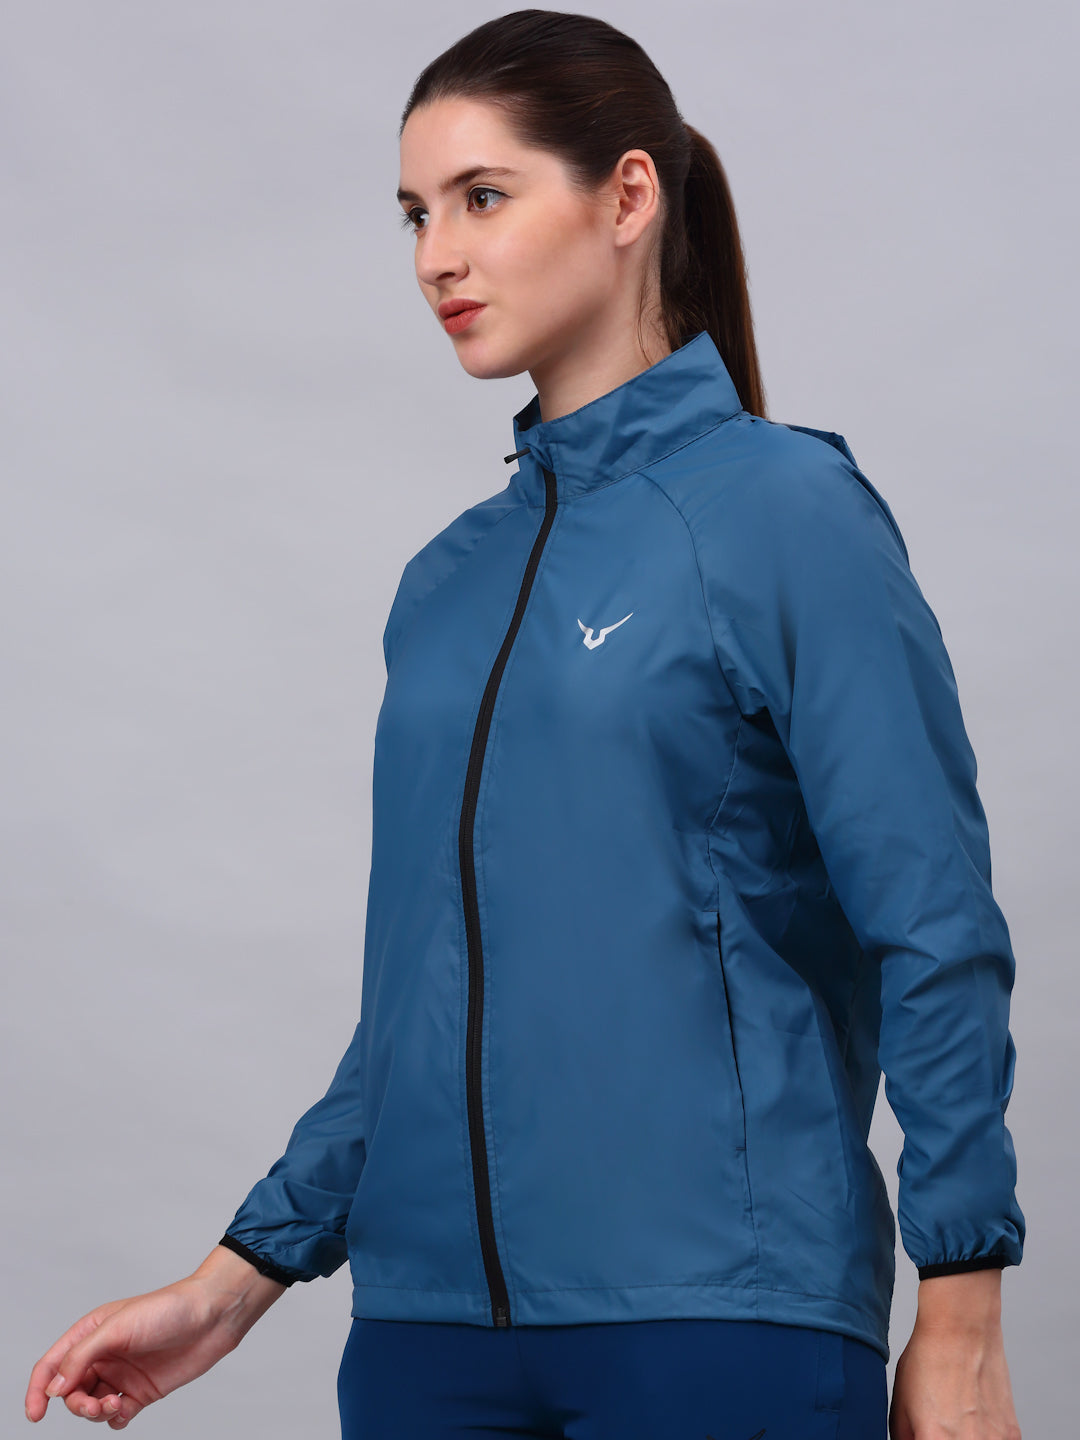 Invincible Women's Wind Runner Outdoor Jacket